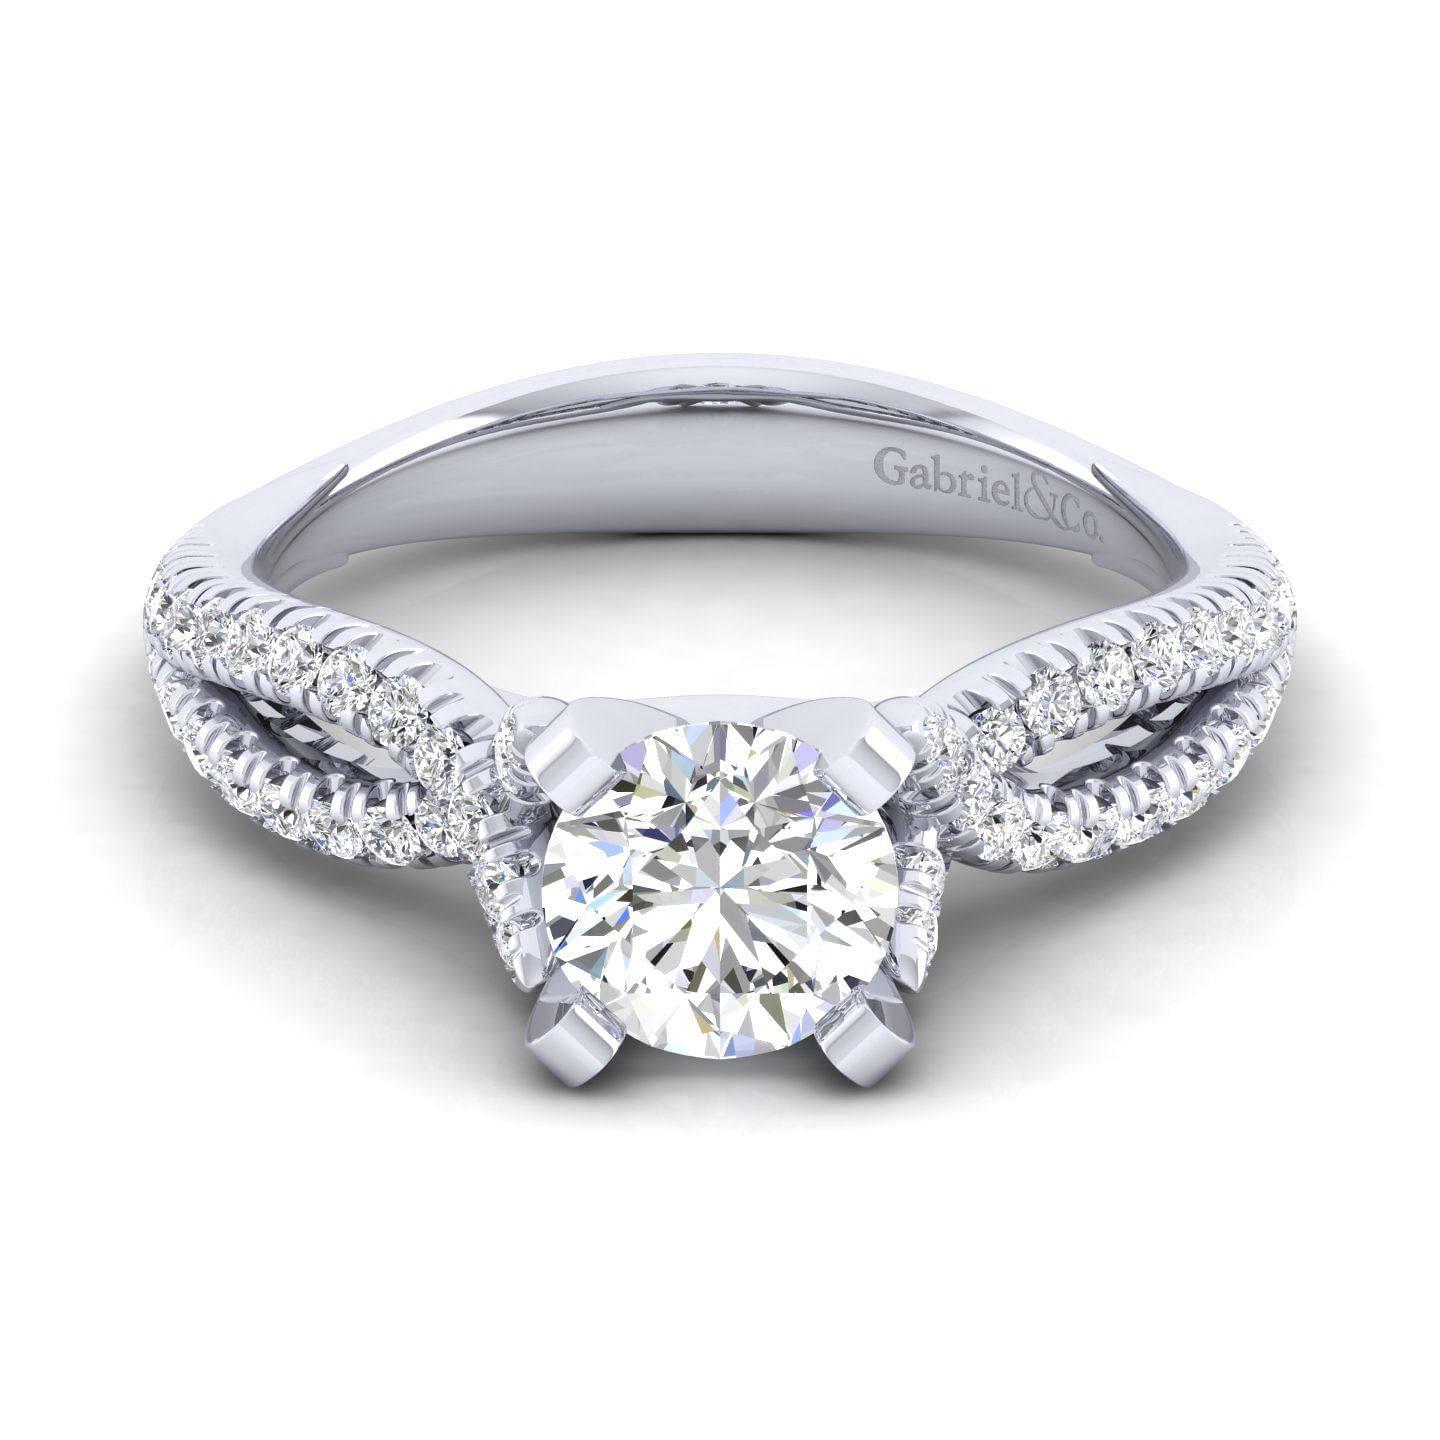 Peyton - 14K White Gold Round Diamond Engagement Ring